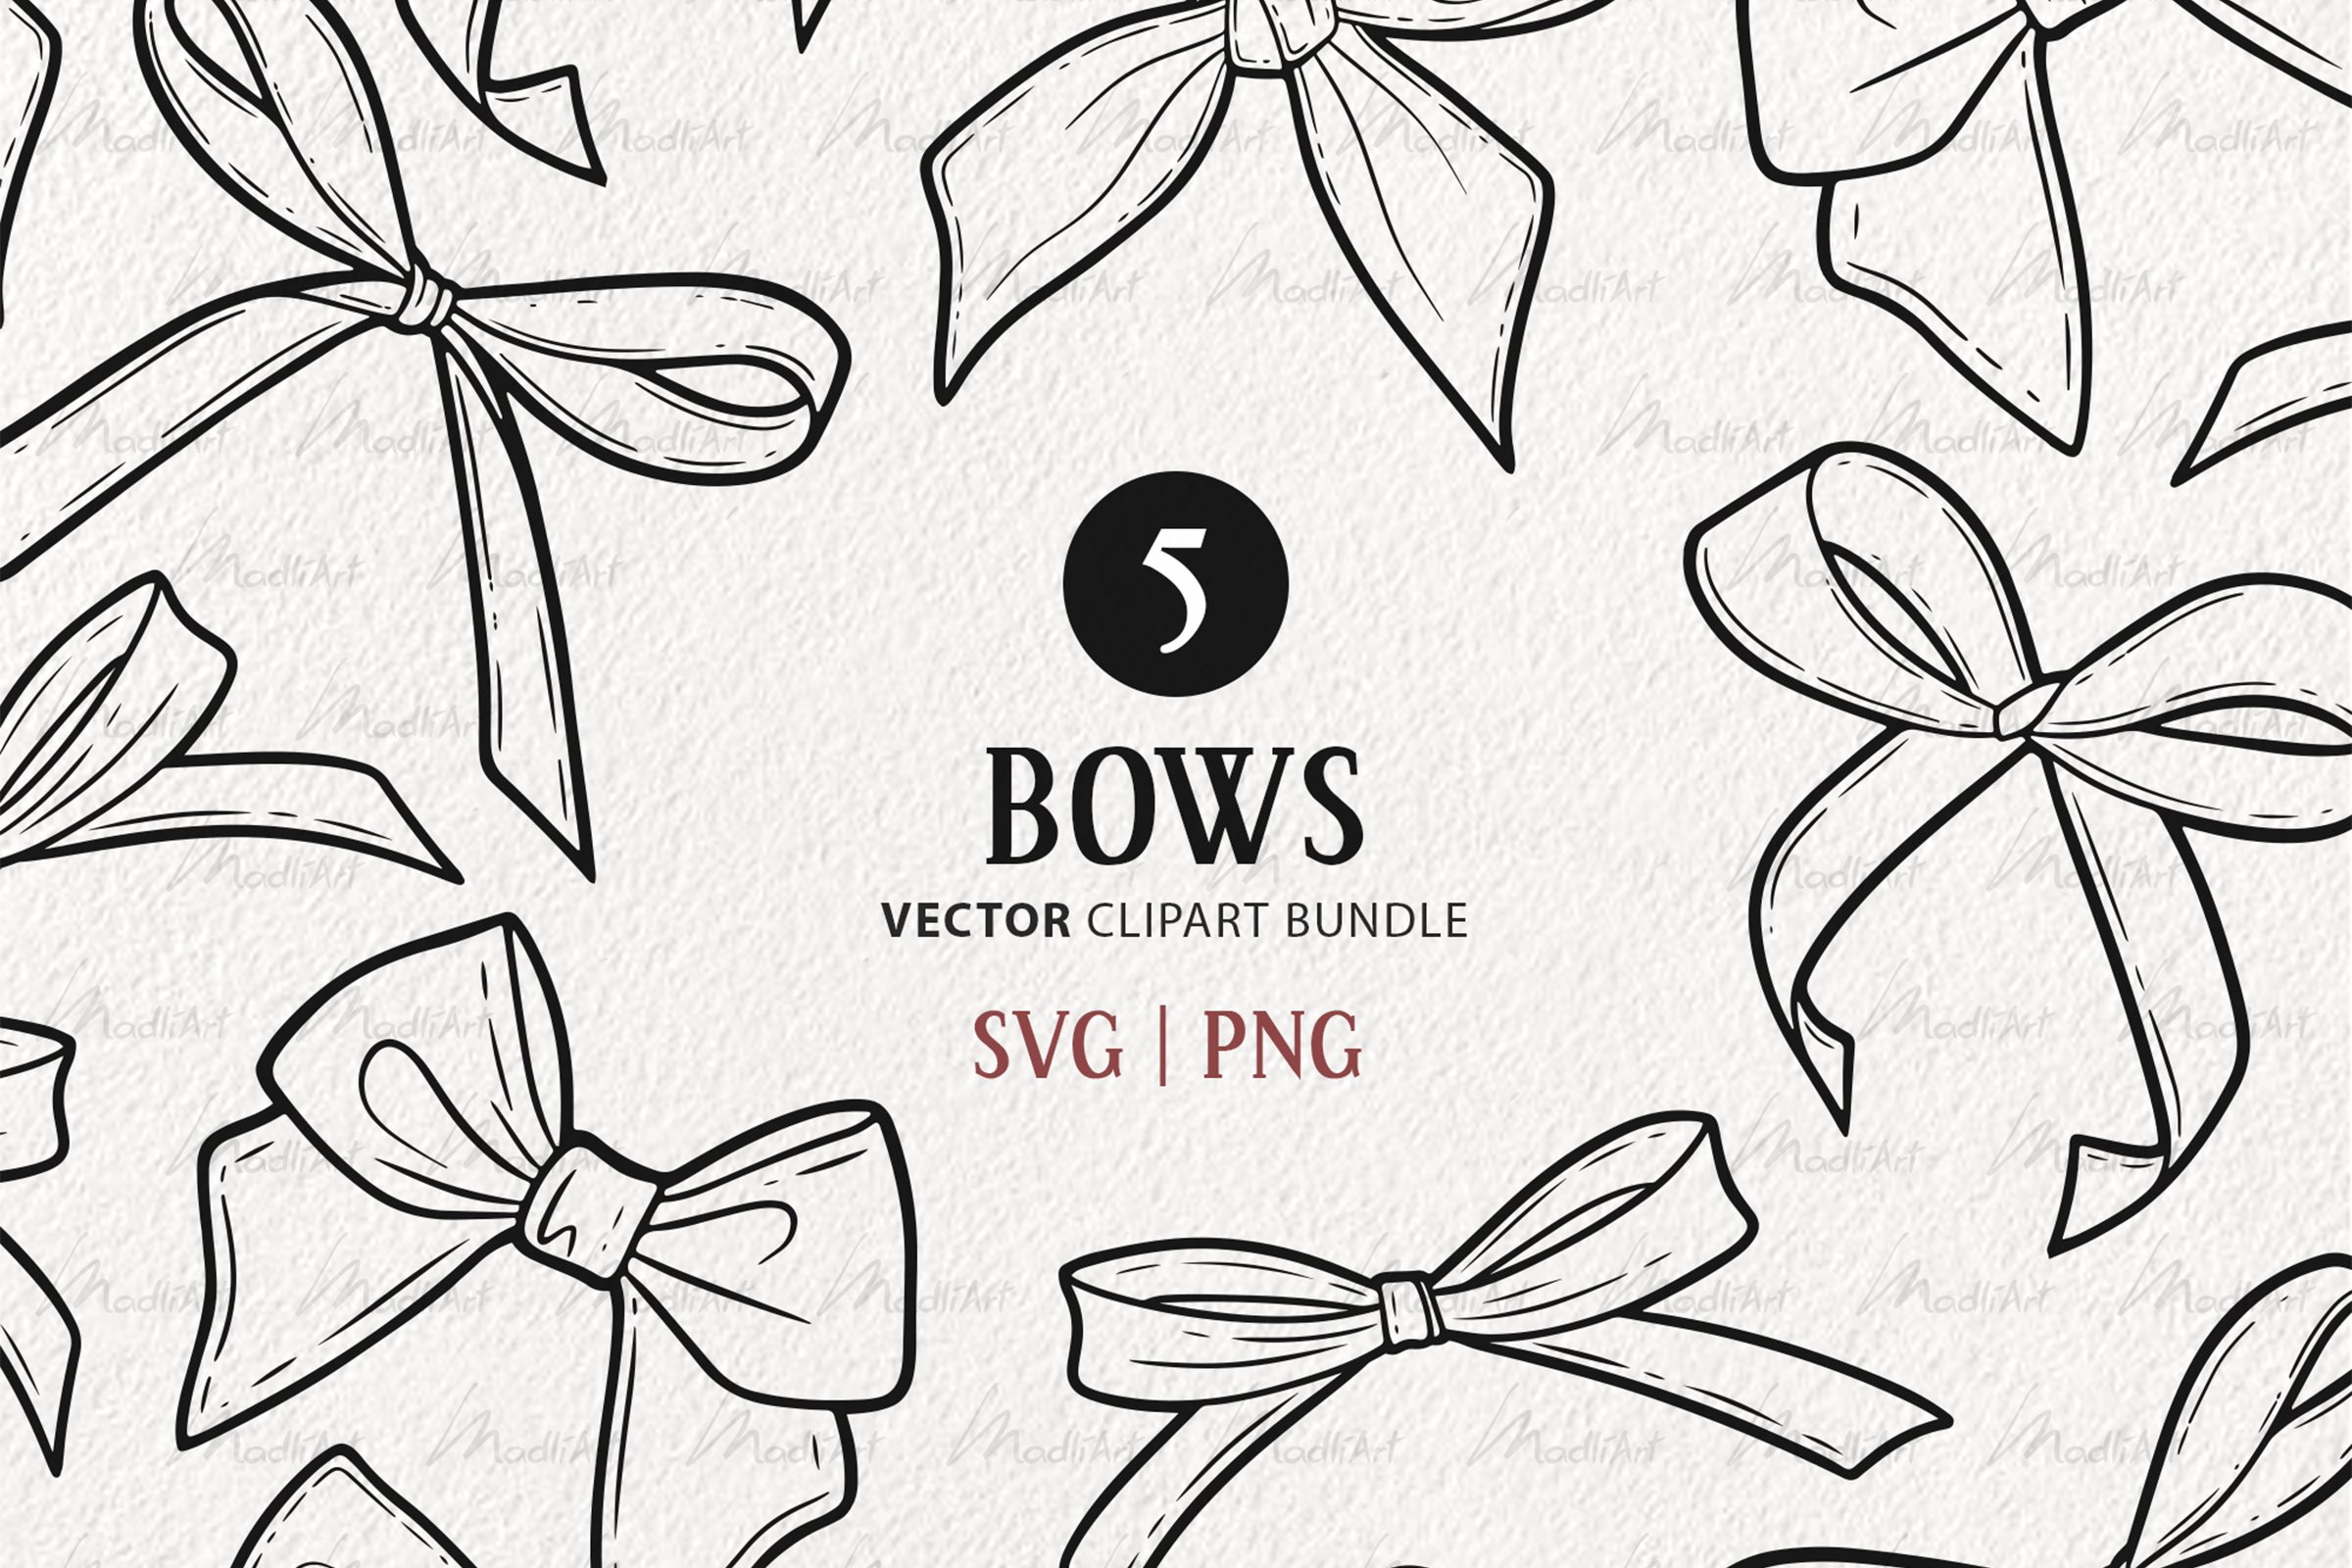 Decoration, gift bow, gift ribbon bow, ribbon, ribbon bow icon